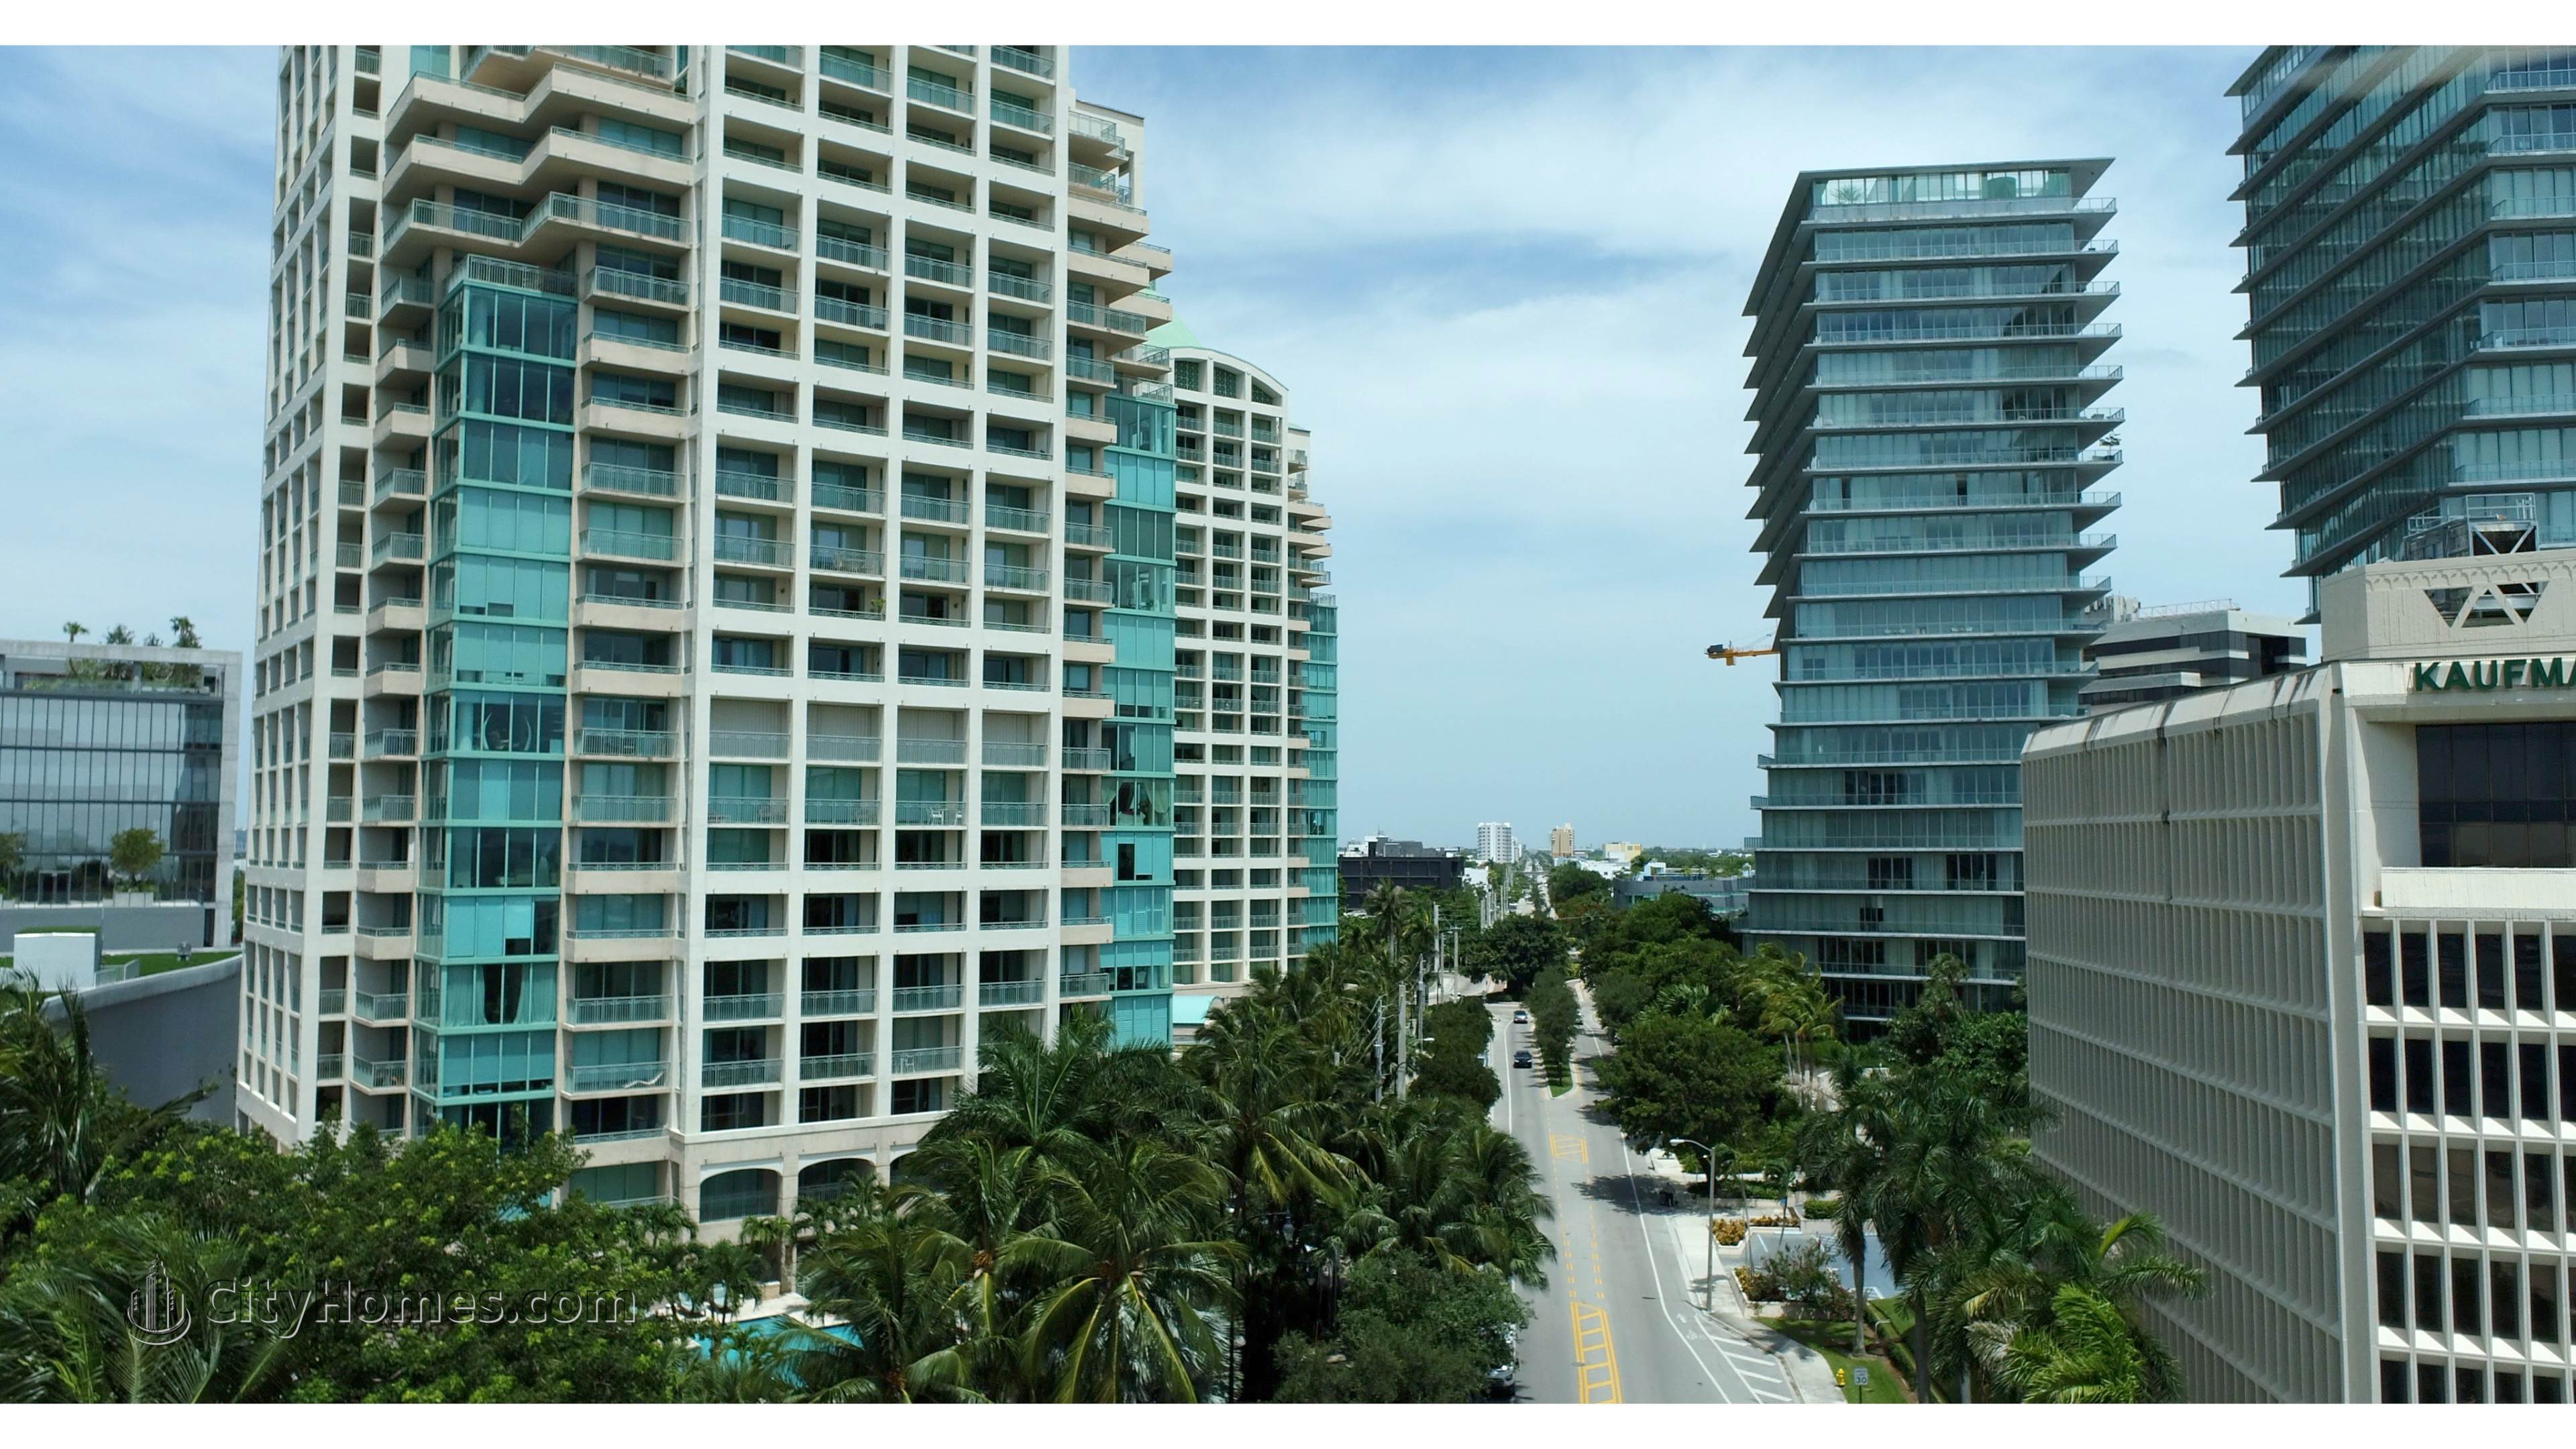 2. Ritz-Carlton Coconut Grove building at 3300 And 3350 SW 27th Avenue, Miami, FL 33133